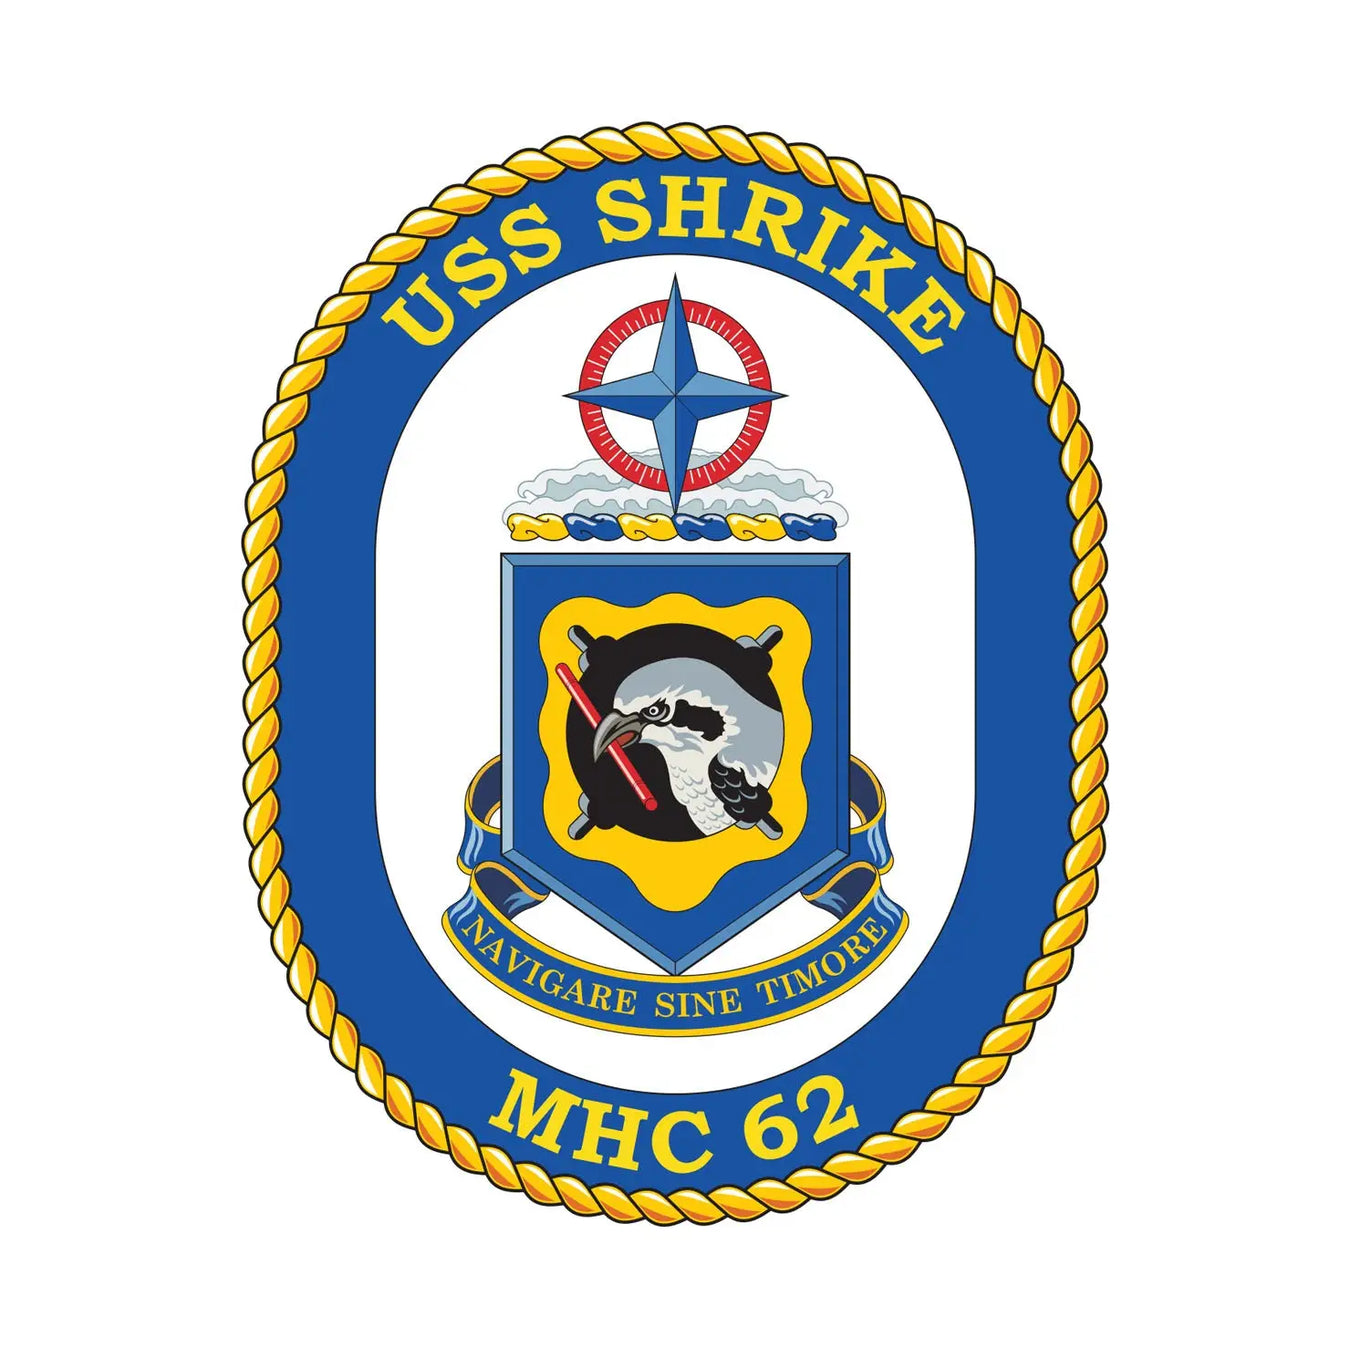 USS Shrike (MHC-62)